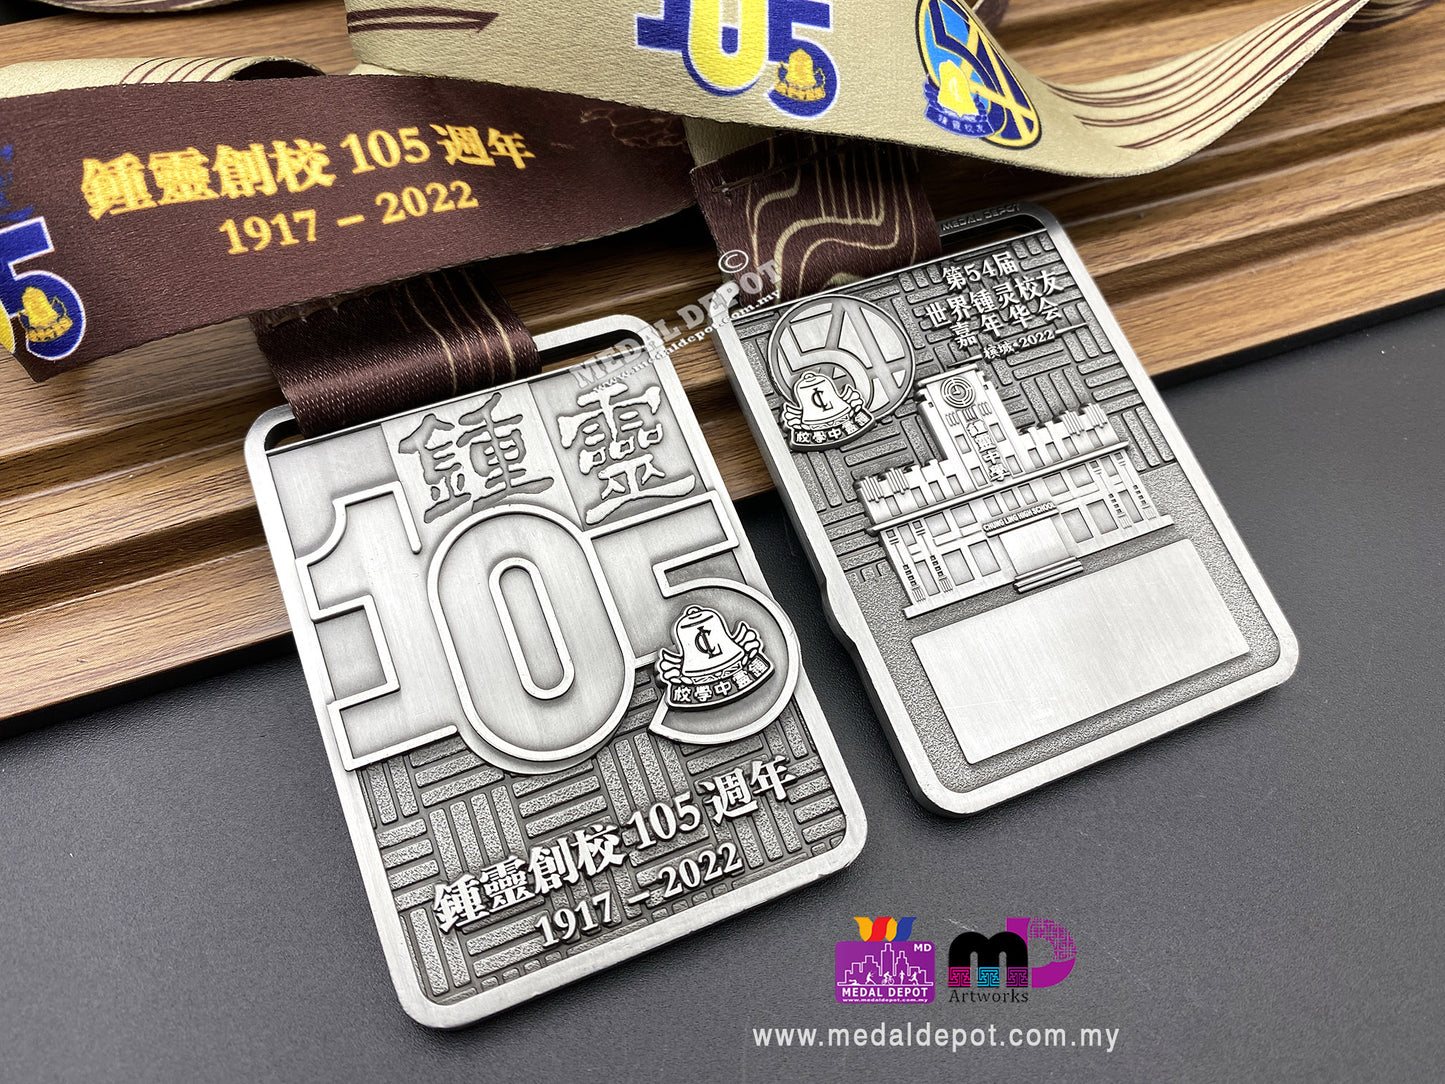 Chung Ling 105 medal